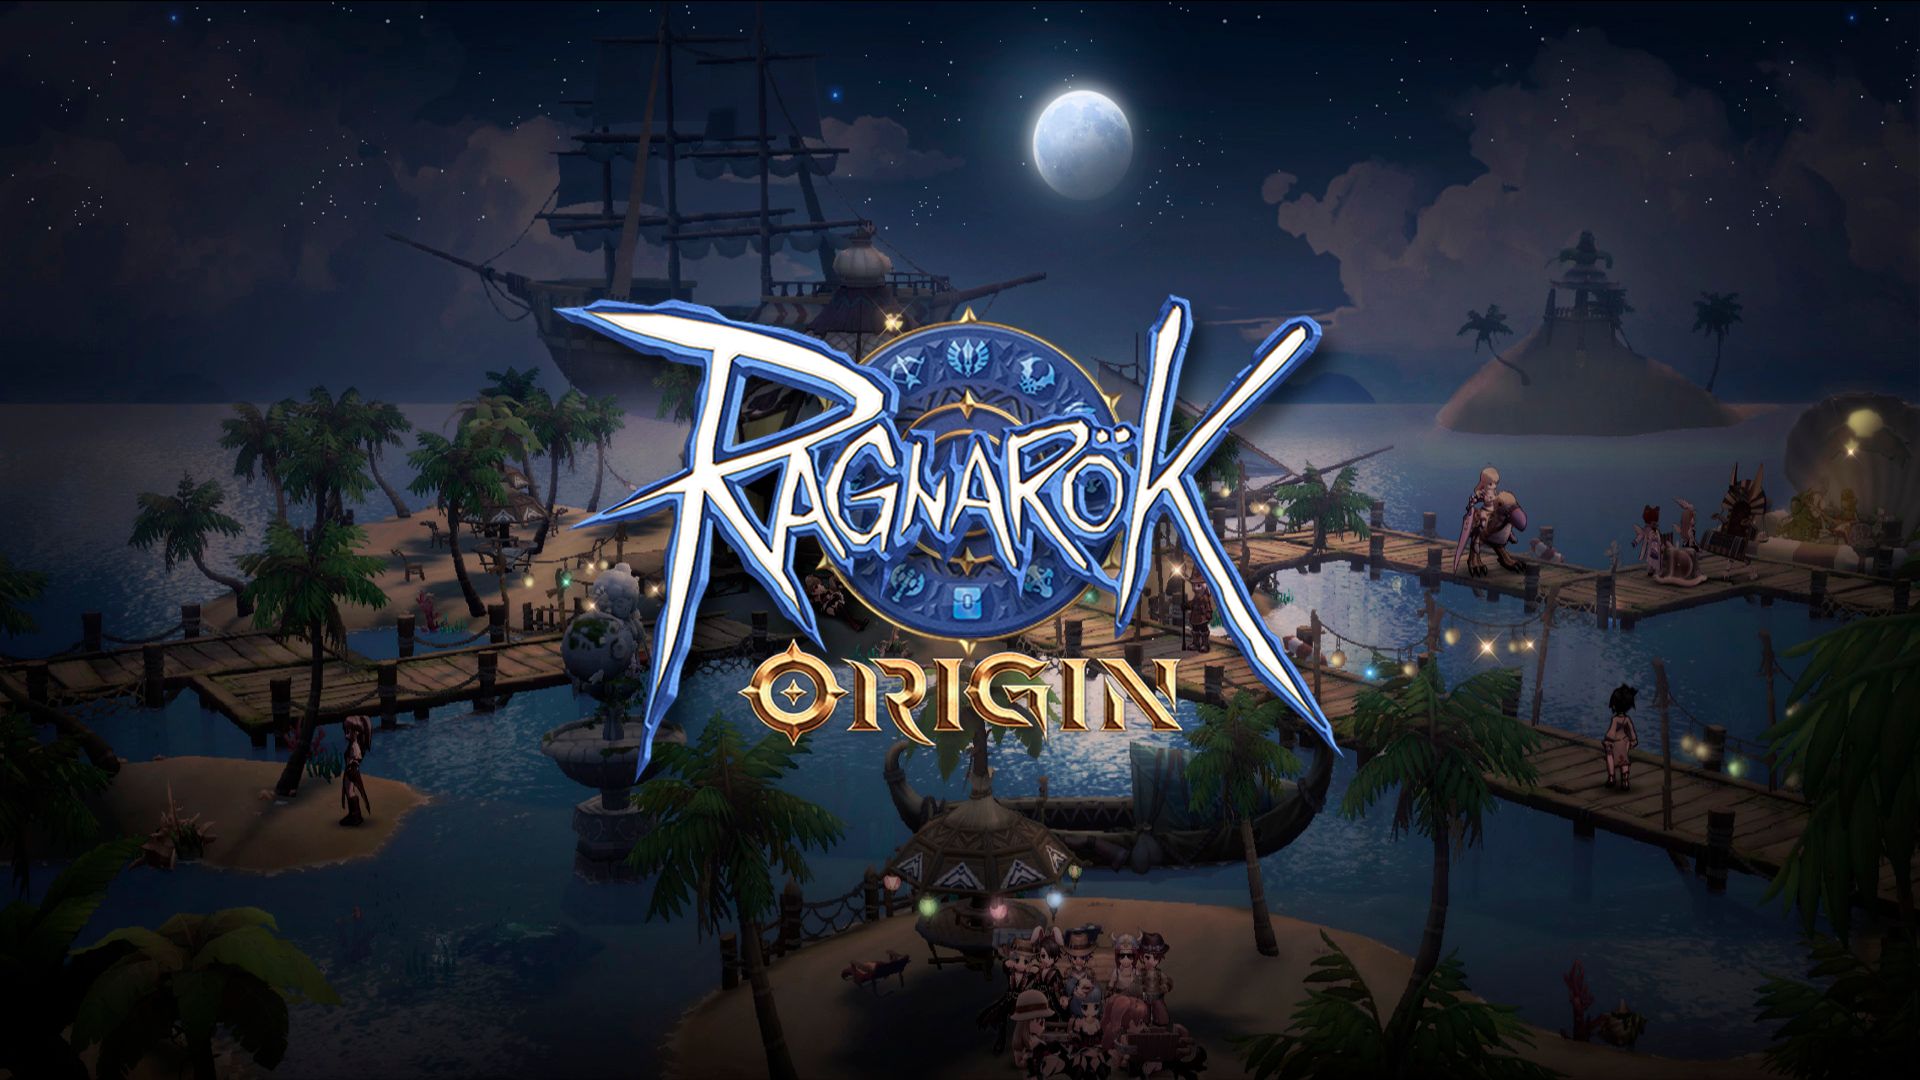 Descargar fondos de escritorio de Ragnarok Origin HD